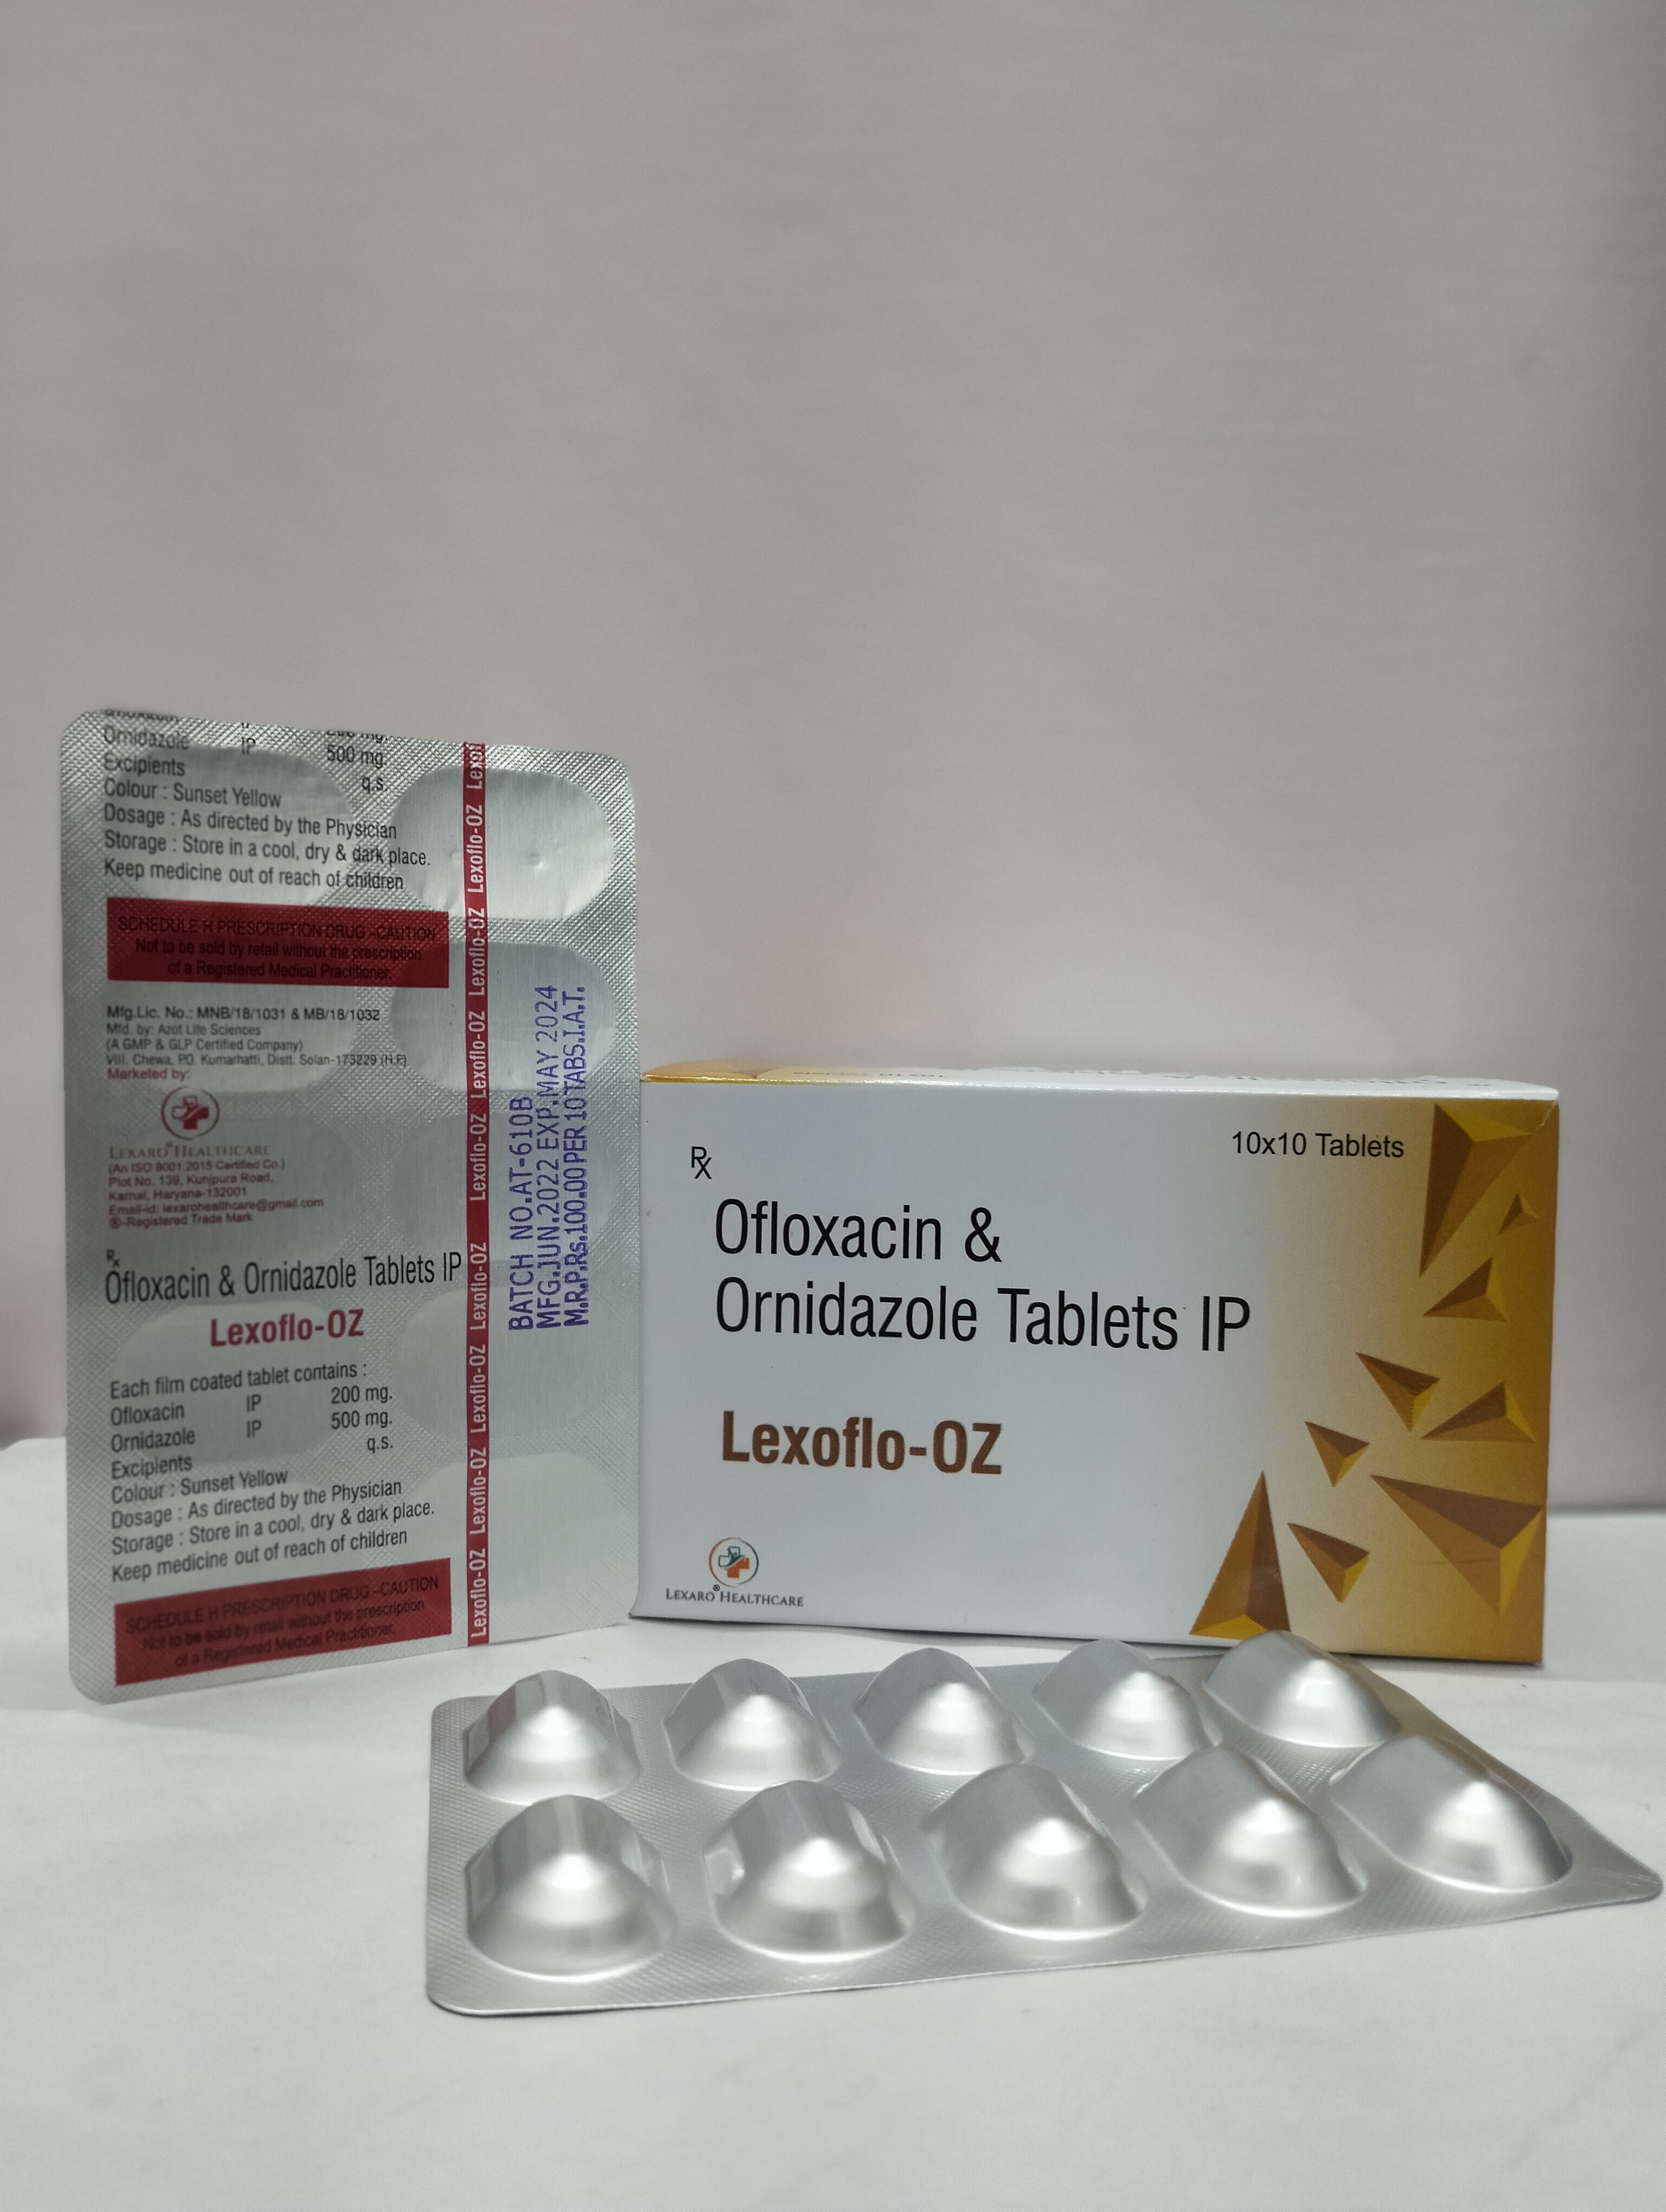 ofloxacin 200mg + ornidazole 500mg